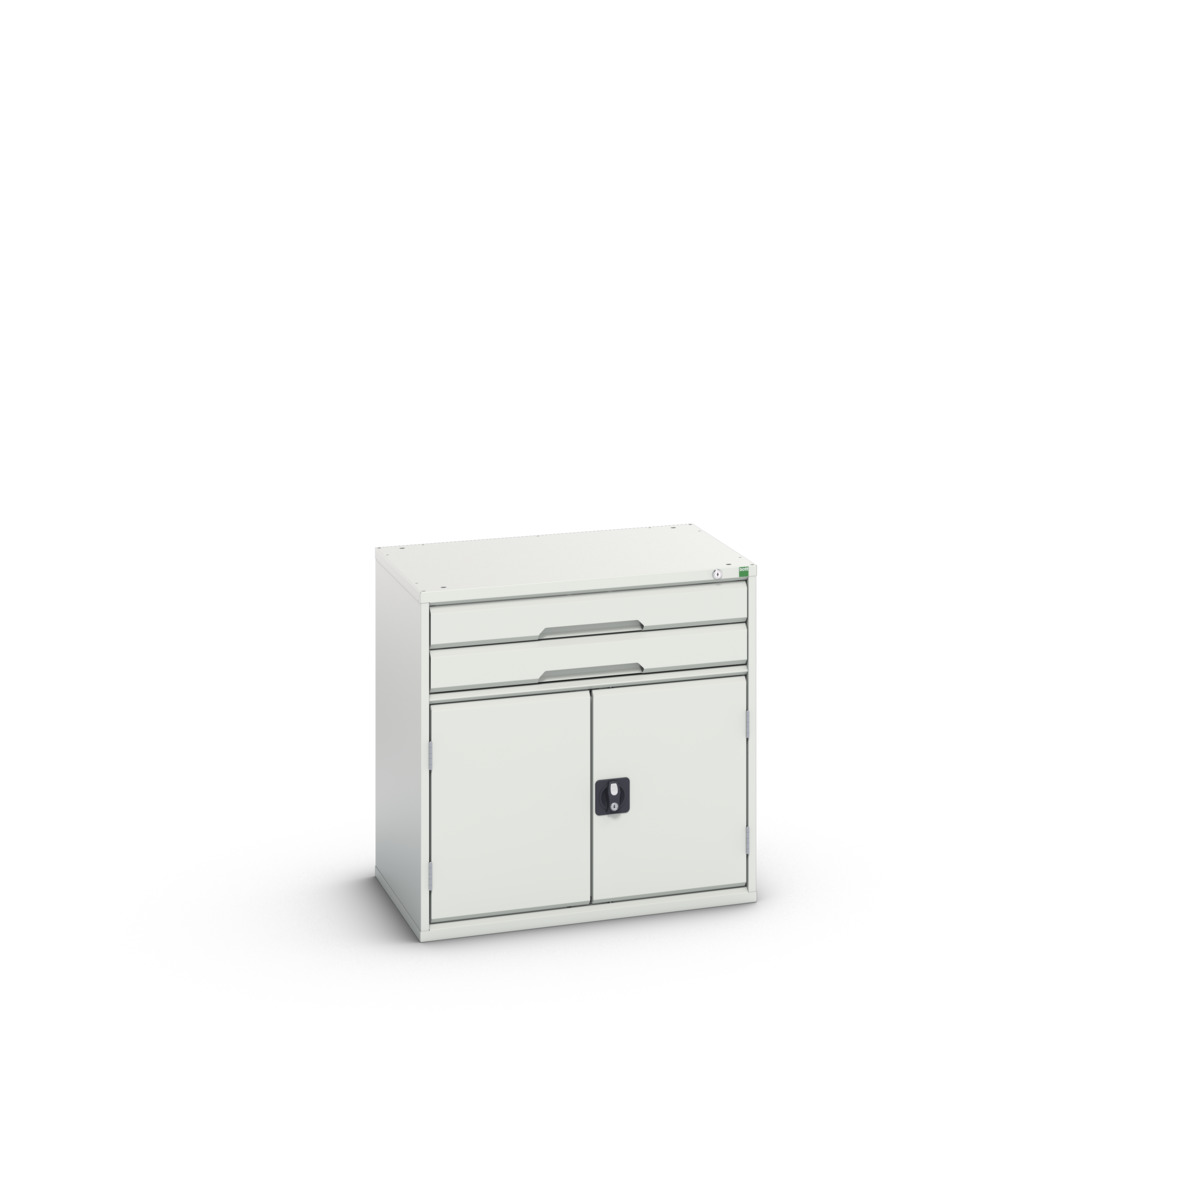 16925116.16 - verso drawer-door cabinet